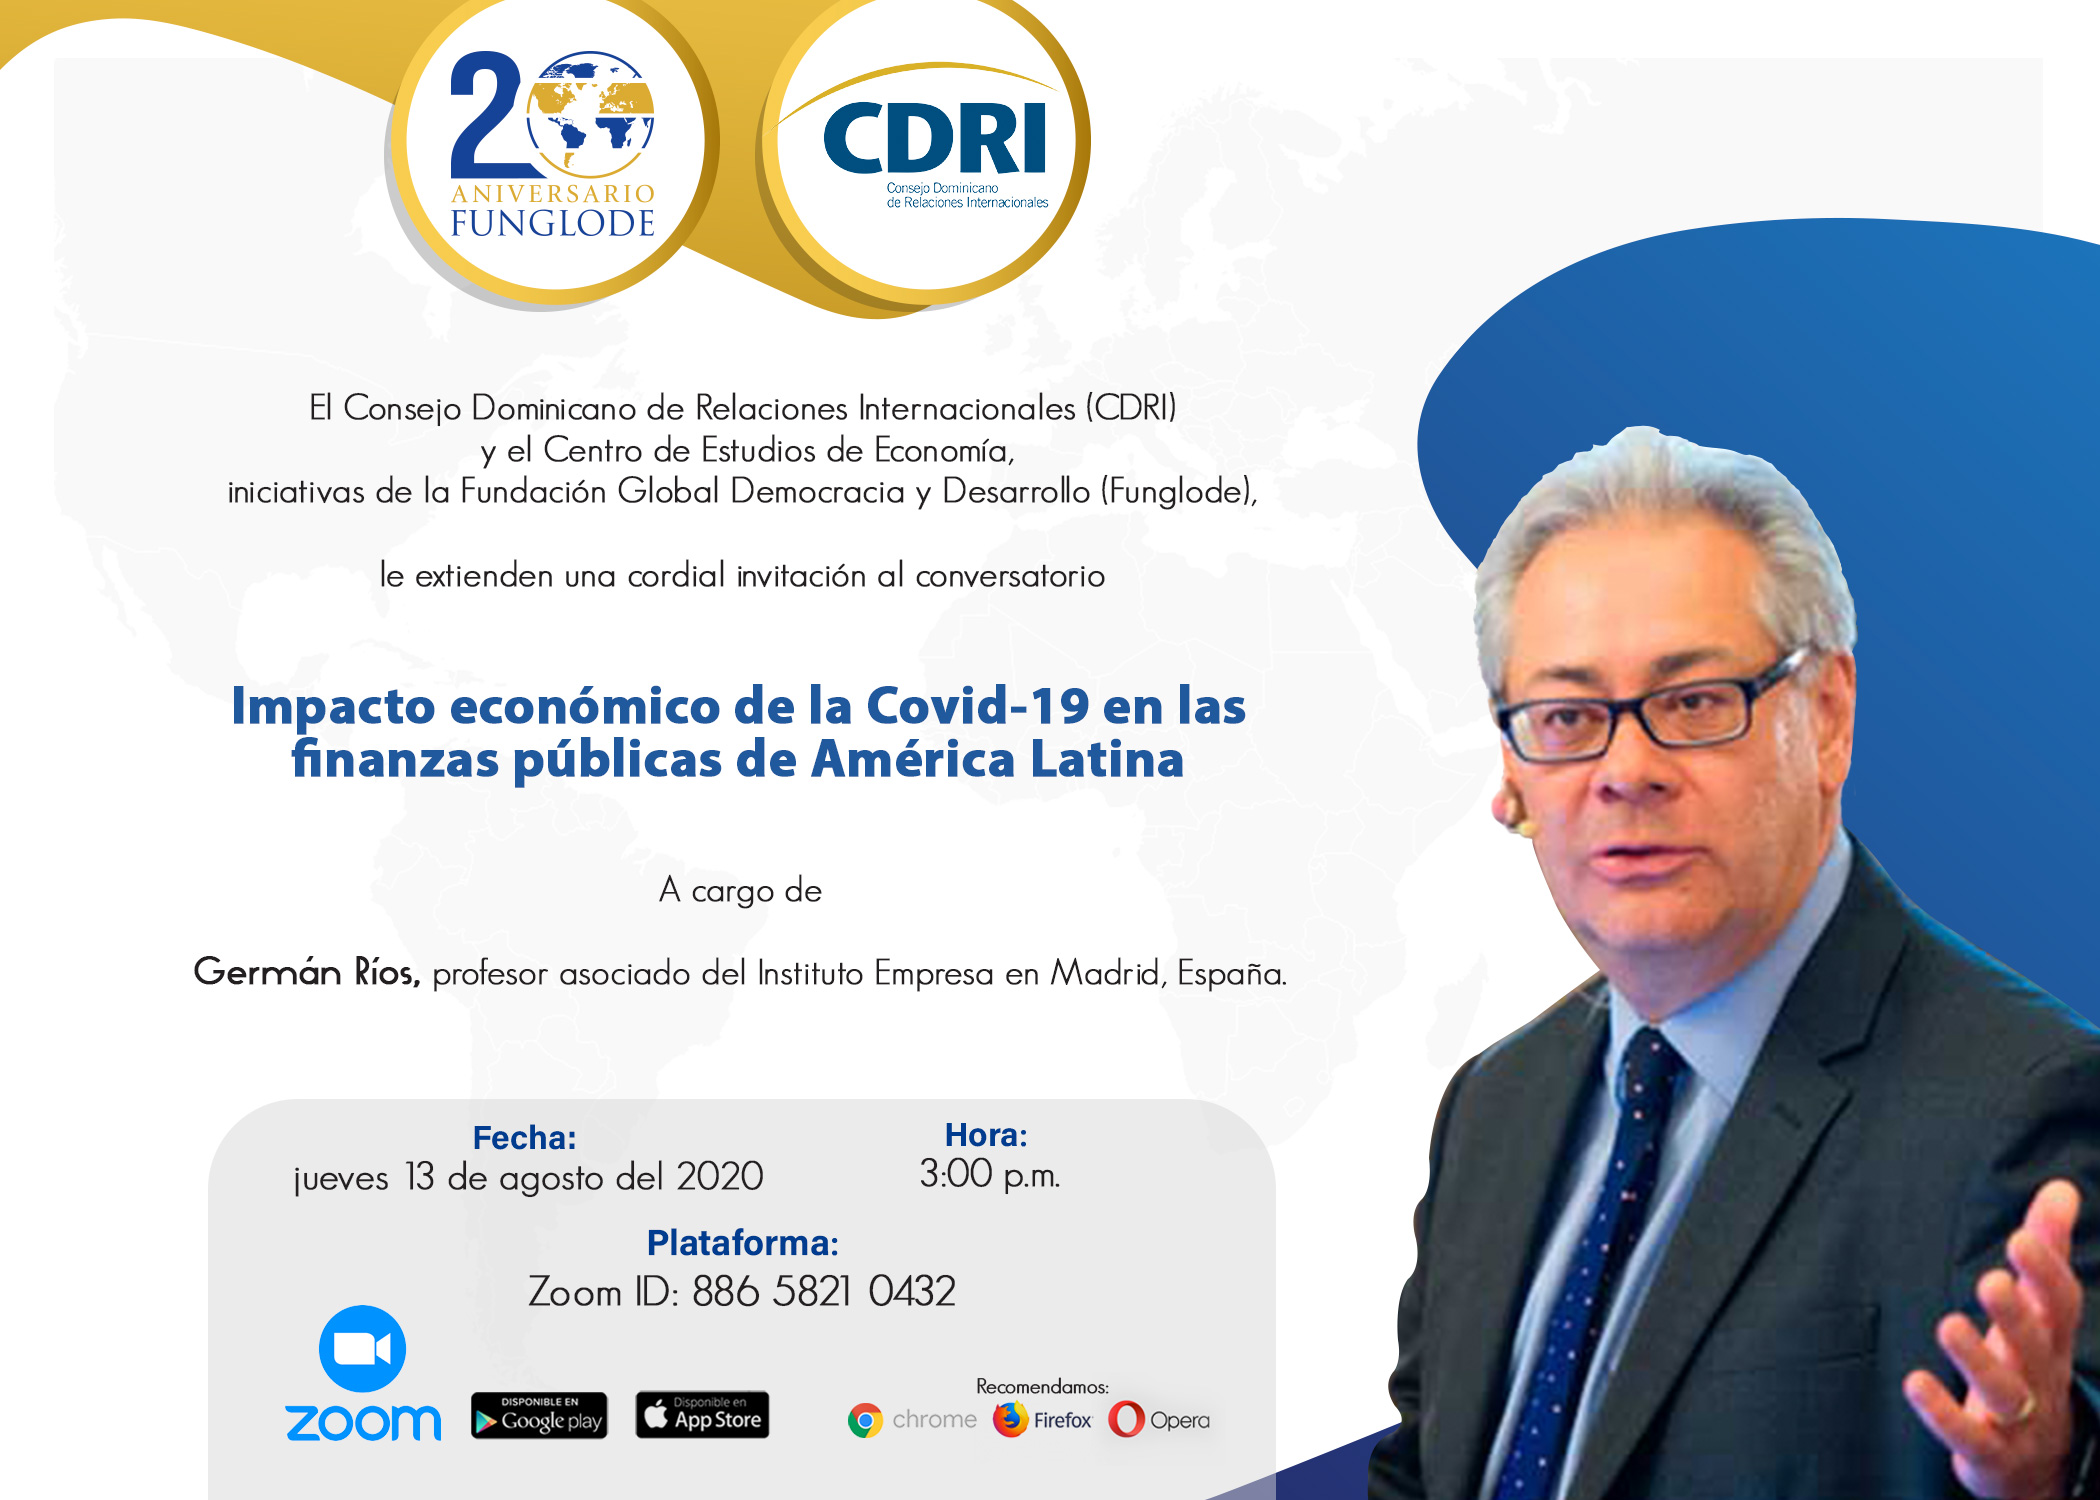  El CDRI Funglode y el Centro de Estudios de Economía invitan al conversatorio «Impacto económico del covid-19 en las finanzas públicas de América Latina»